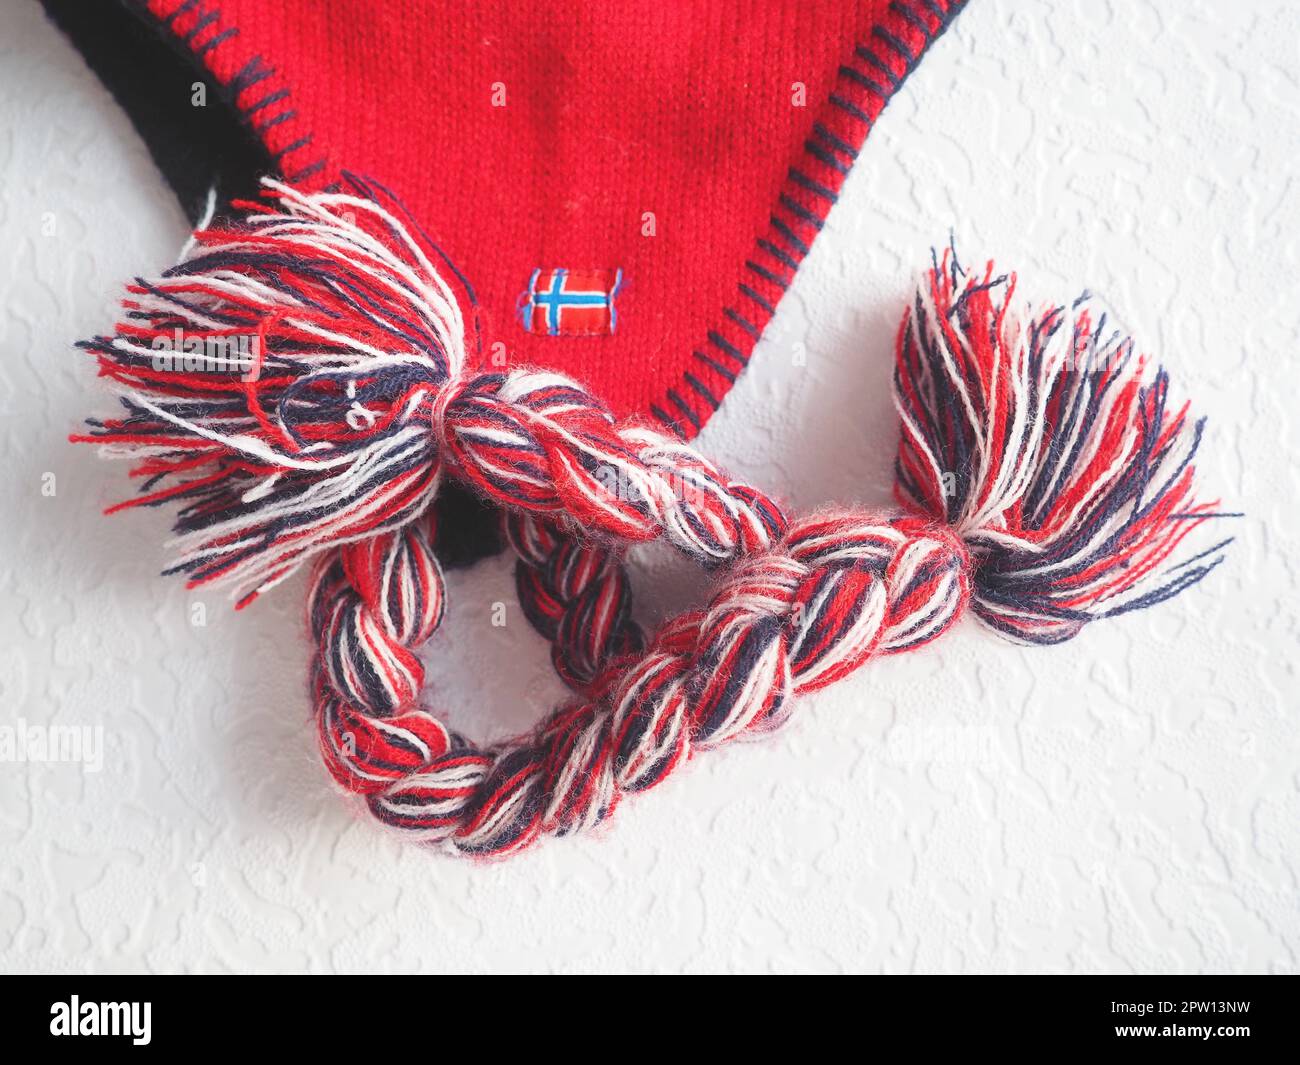 Kappe mit Ohrenklappen im norwegischen Stil. Gestrickter Modeartikel mit Krawatten und Bommeltaschen. Rotes Garn mit schwarz-weißen Fäden. Aufgenähte Minifahne Stockfoto